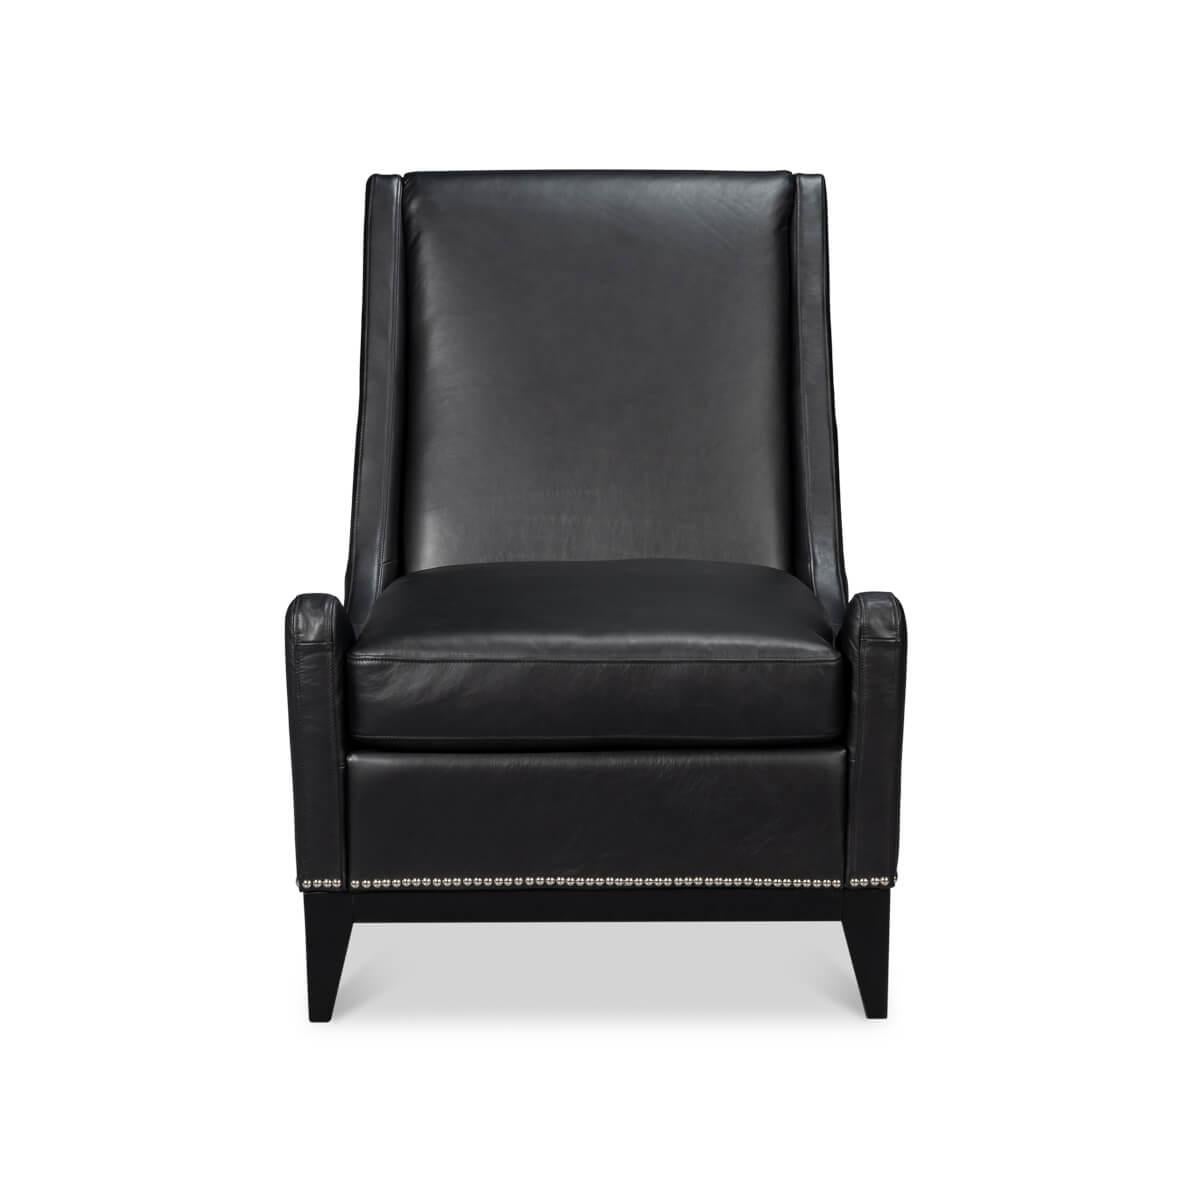 Dieser mit viel Liebe zum Detail gefertigte Sessel ist aus geschmeidigem, hochwertigem Leder gefertigt und lädt zum Sitzen und Entspannen ein. Das dunkle Leder in Onyxschwarz wird durch die klassische Nagelkopfverzierung wunderbar ergänzt und